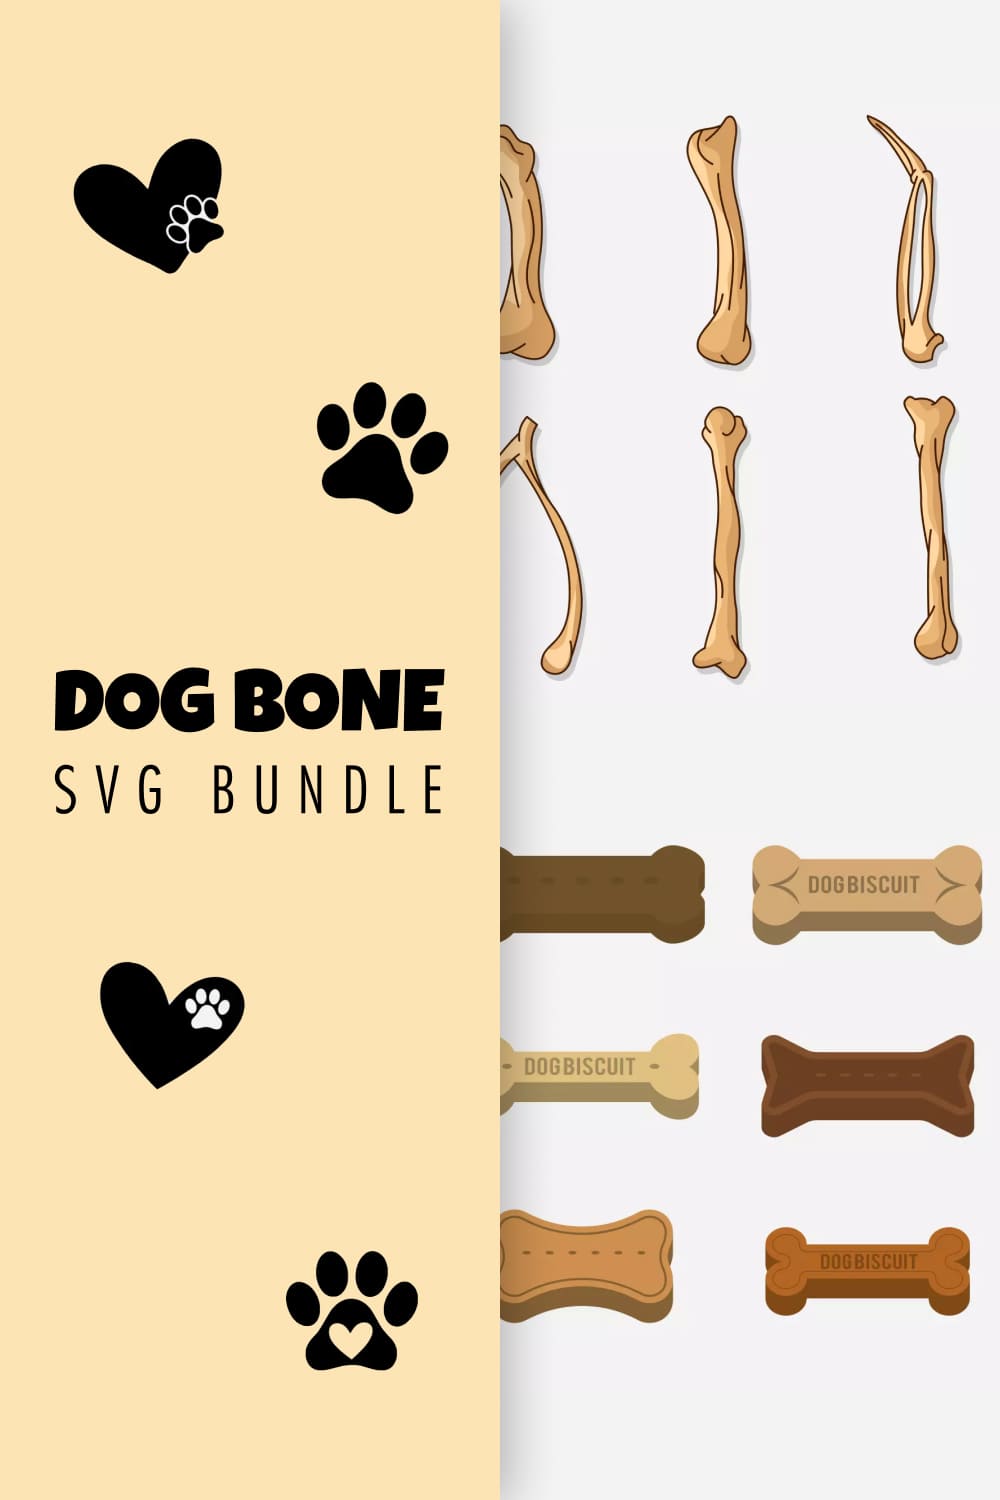 Dog Bone SVG Bundle - pinterest image preview.